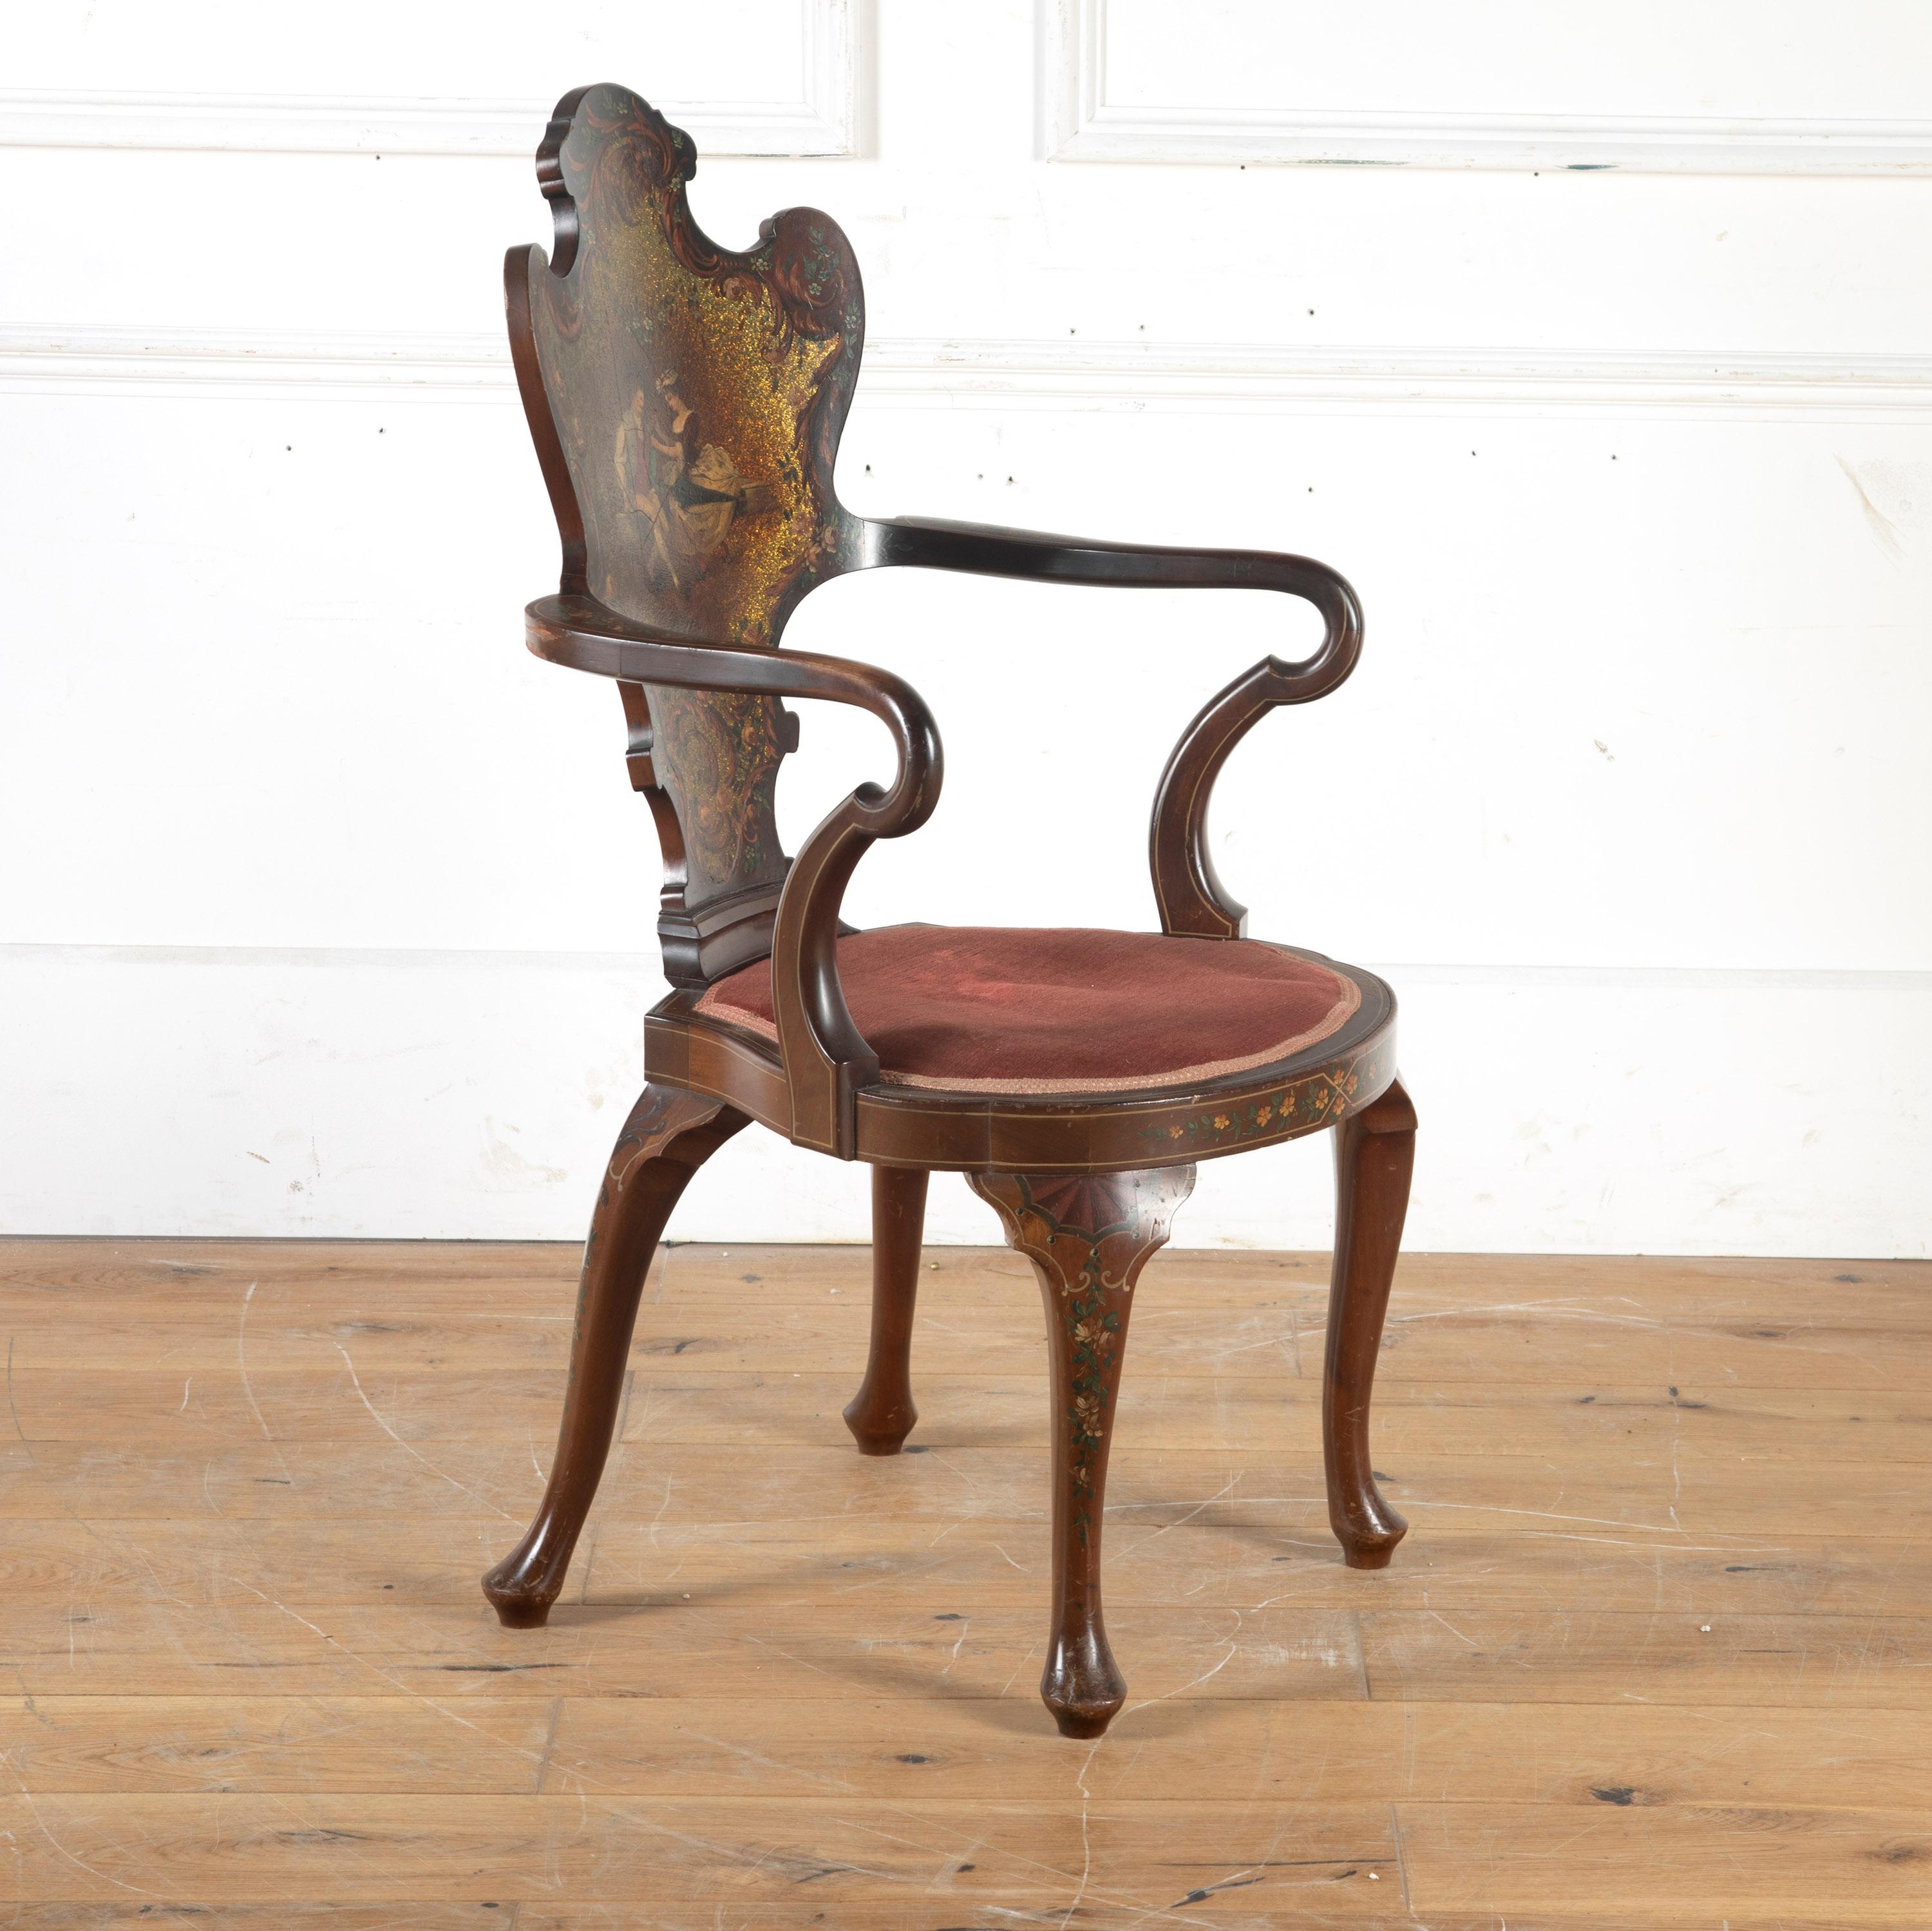 Fauteuil de salon très décoratif de la fin du XIXe siècle dans le goût italien. 

Cette chaise de qualité supérieure a été fabriquée par les éminents fabricants Edwards & Roberts de Wardour Street et Oxford Street, à Londres.

La chaise est